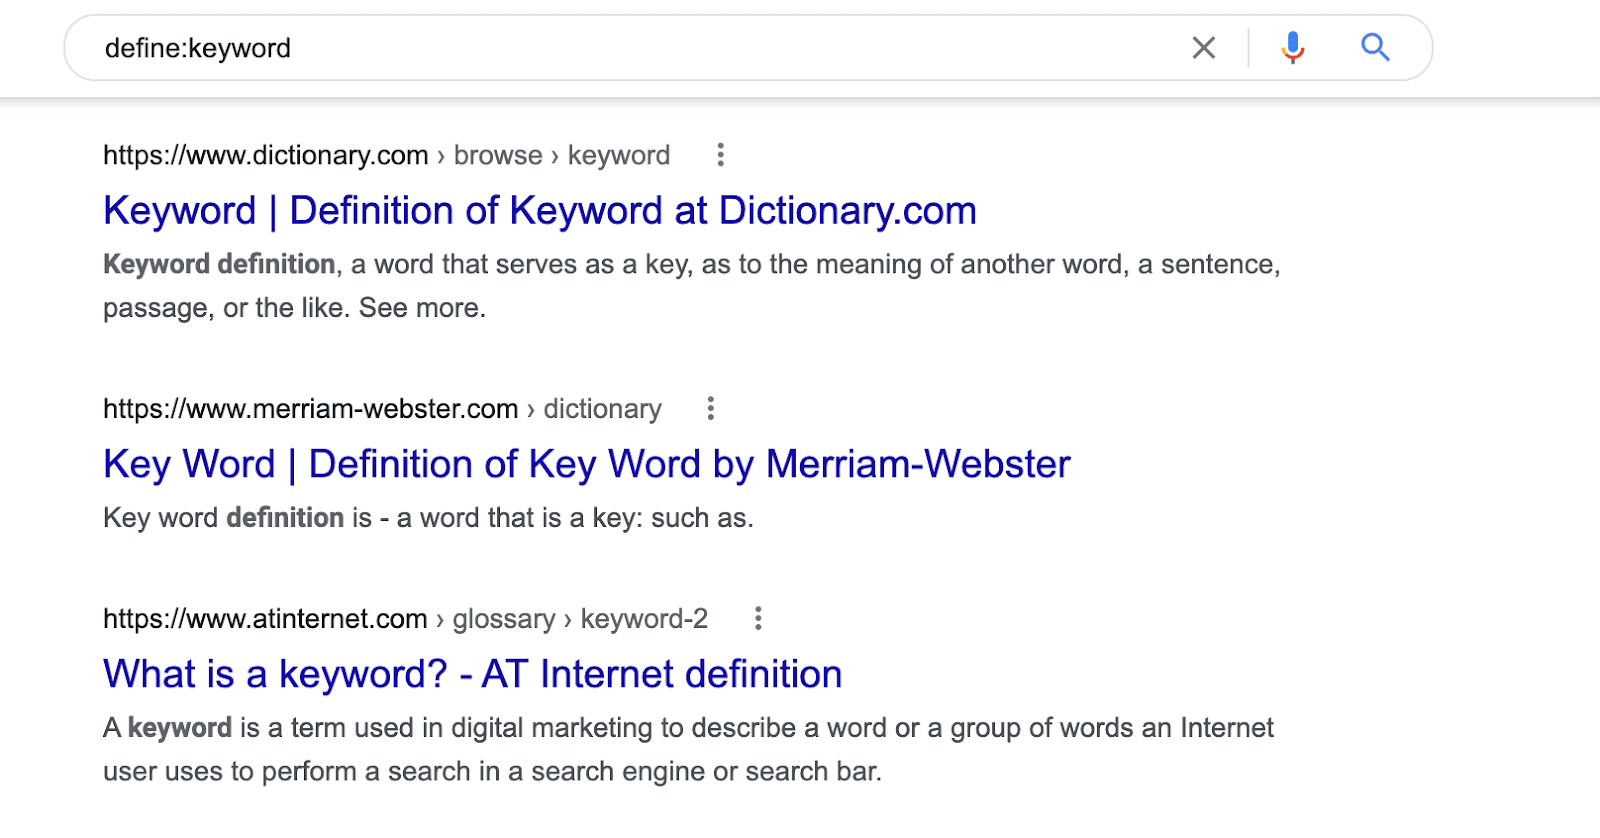 define:keyword